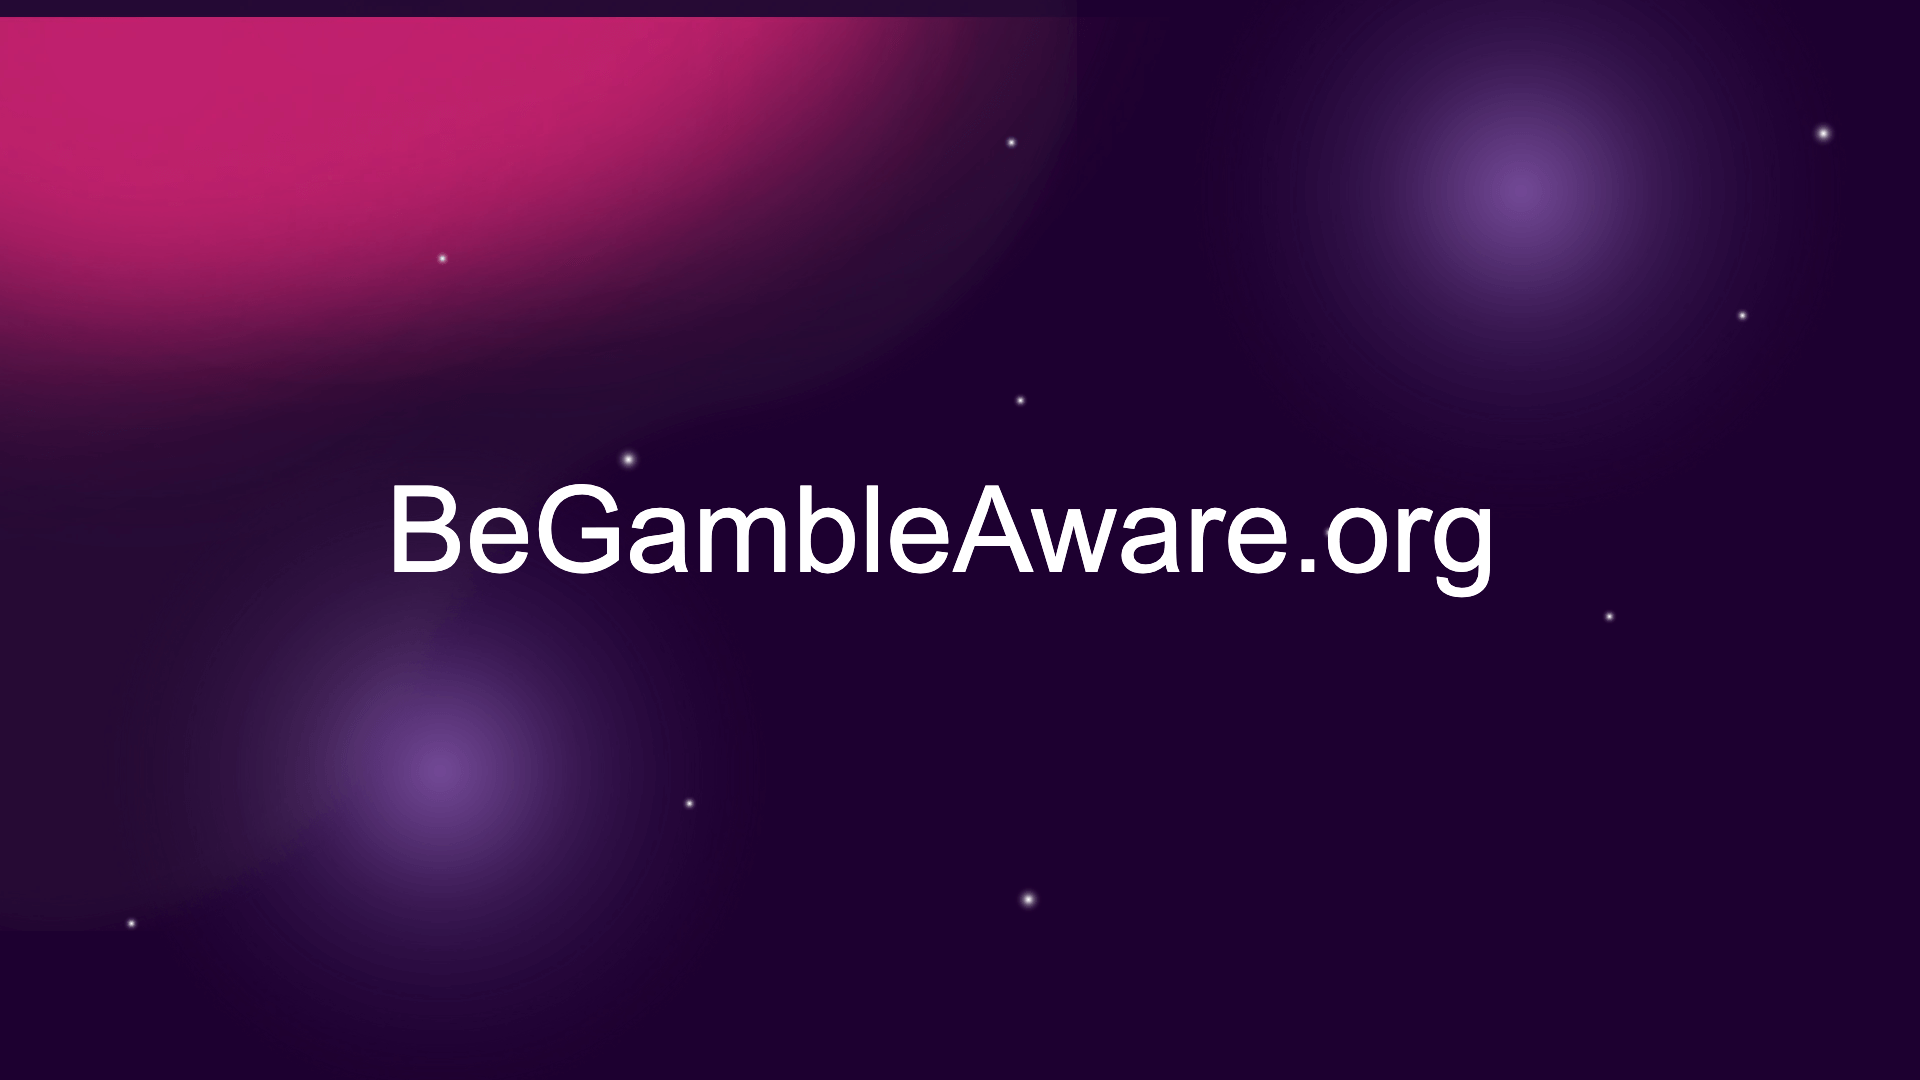 H bet365 ένας από τους μεγαλύτερους δωρητές της GambleAware